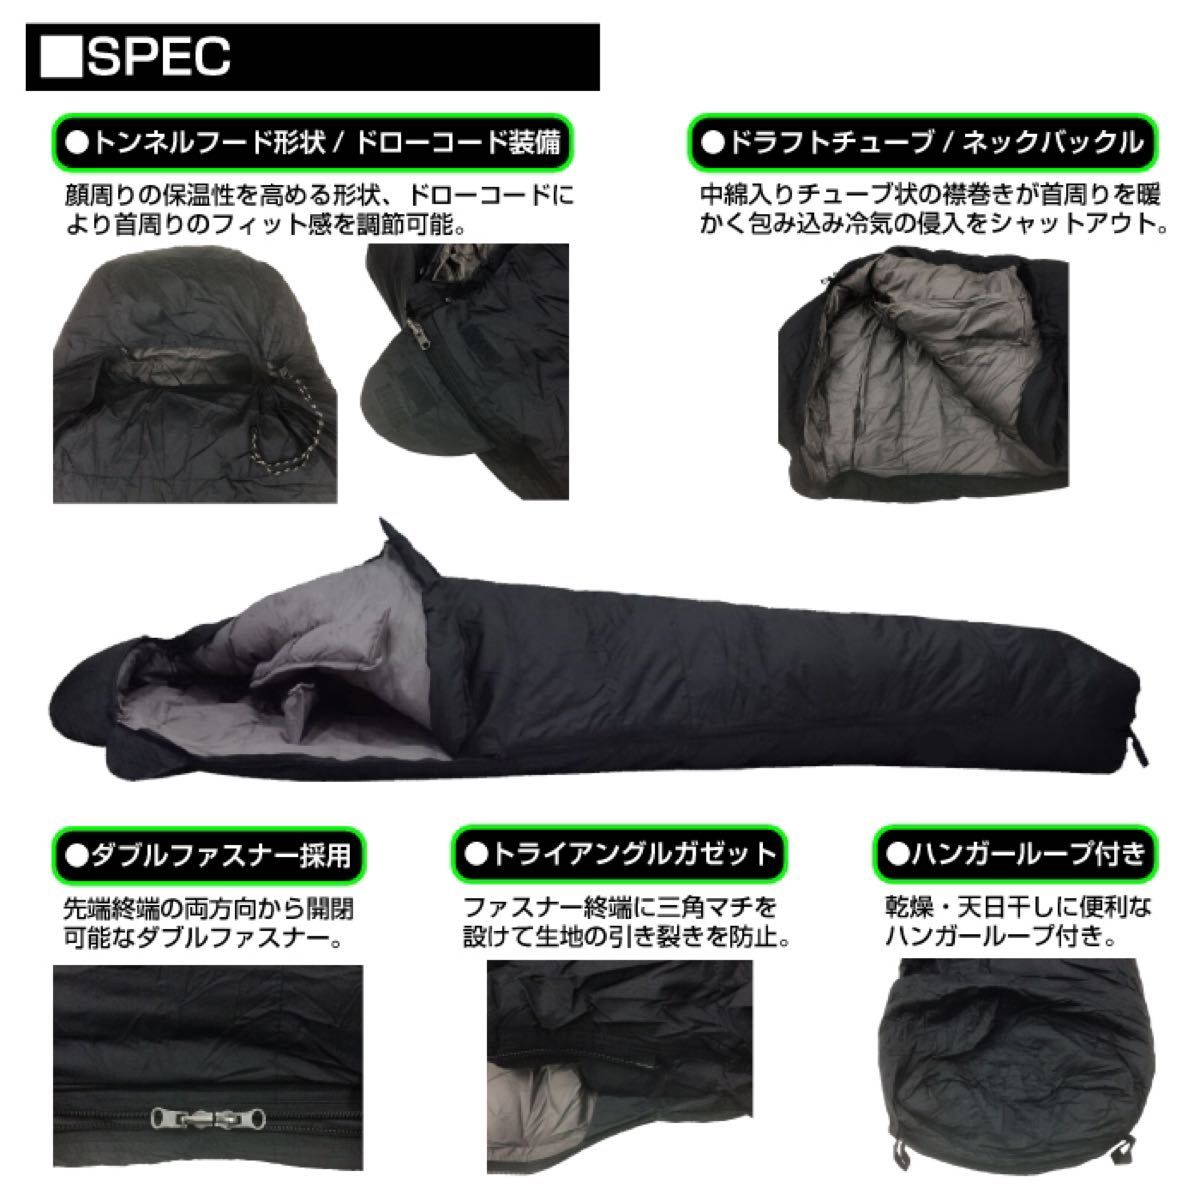 【期間限定】 高級 ダウン 寝袋 -25℃ マミー型 キャンプ 車中泊 防災 グリーン